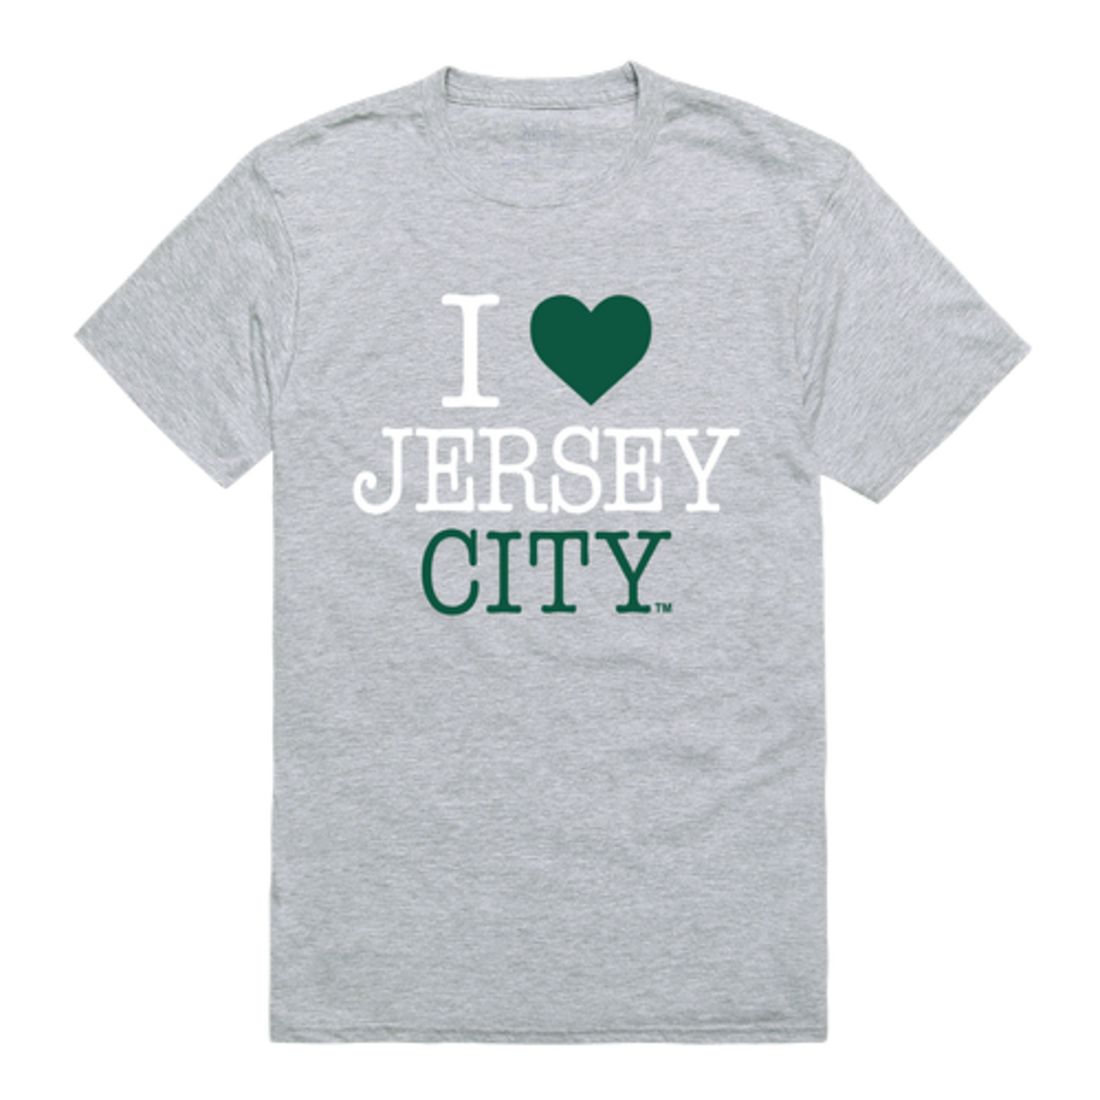 I Love New Jersey City University Knights T-Shirt Tee